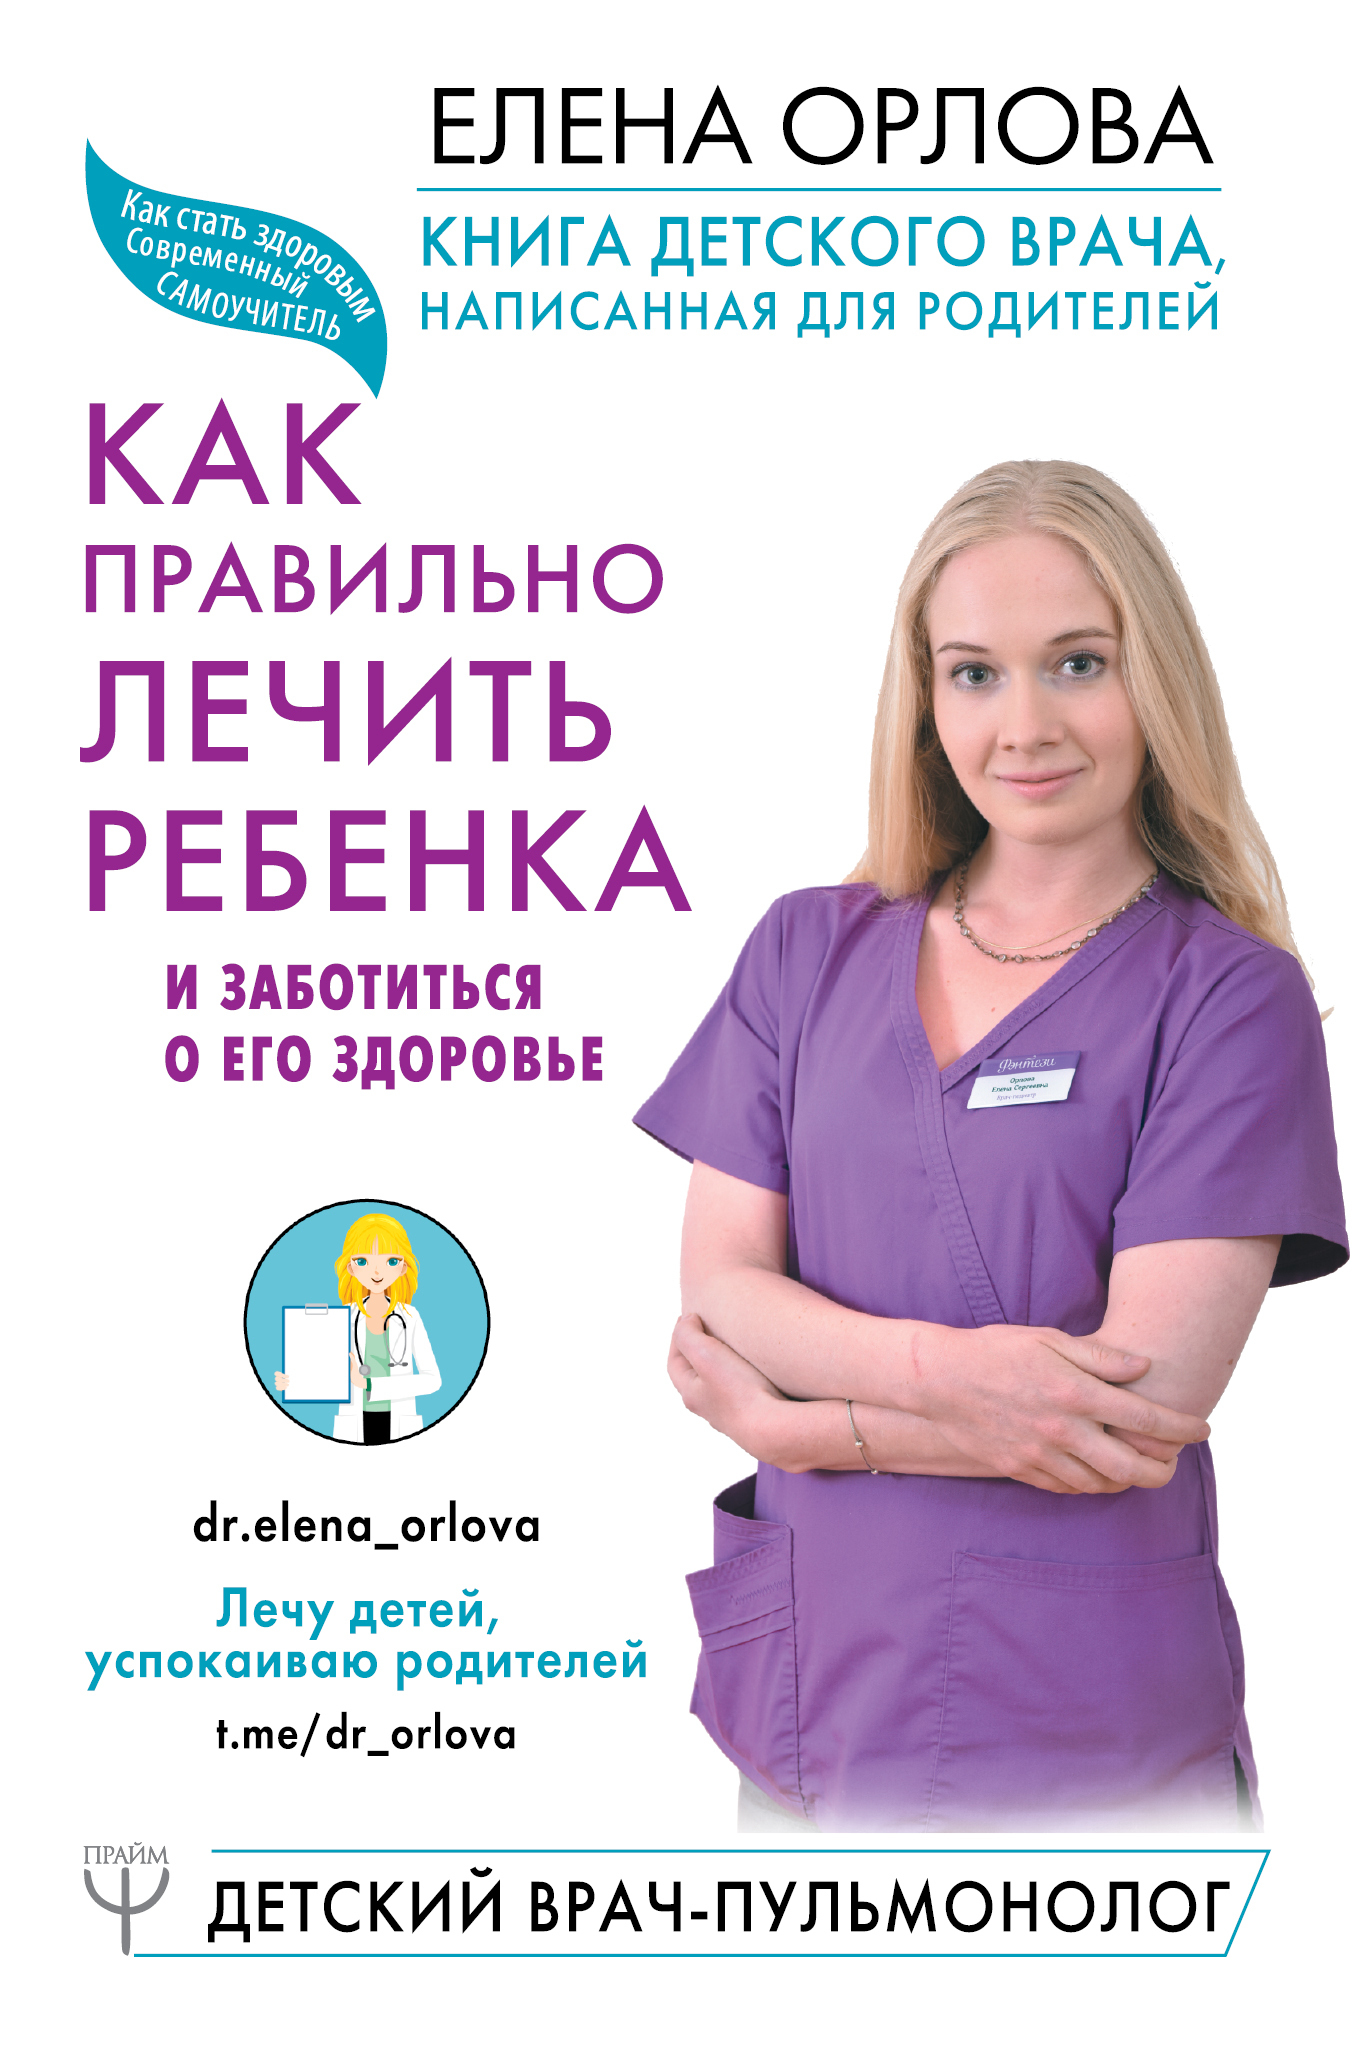 Орлова Елена - Книга детского врача, написанная для родителей. Как правильно лечить ребенка и заботиться о его здоровье скачать бесплатно